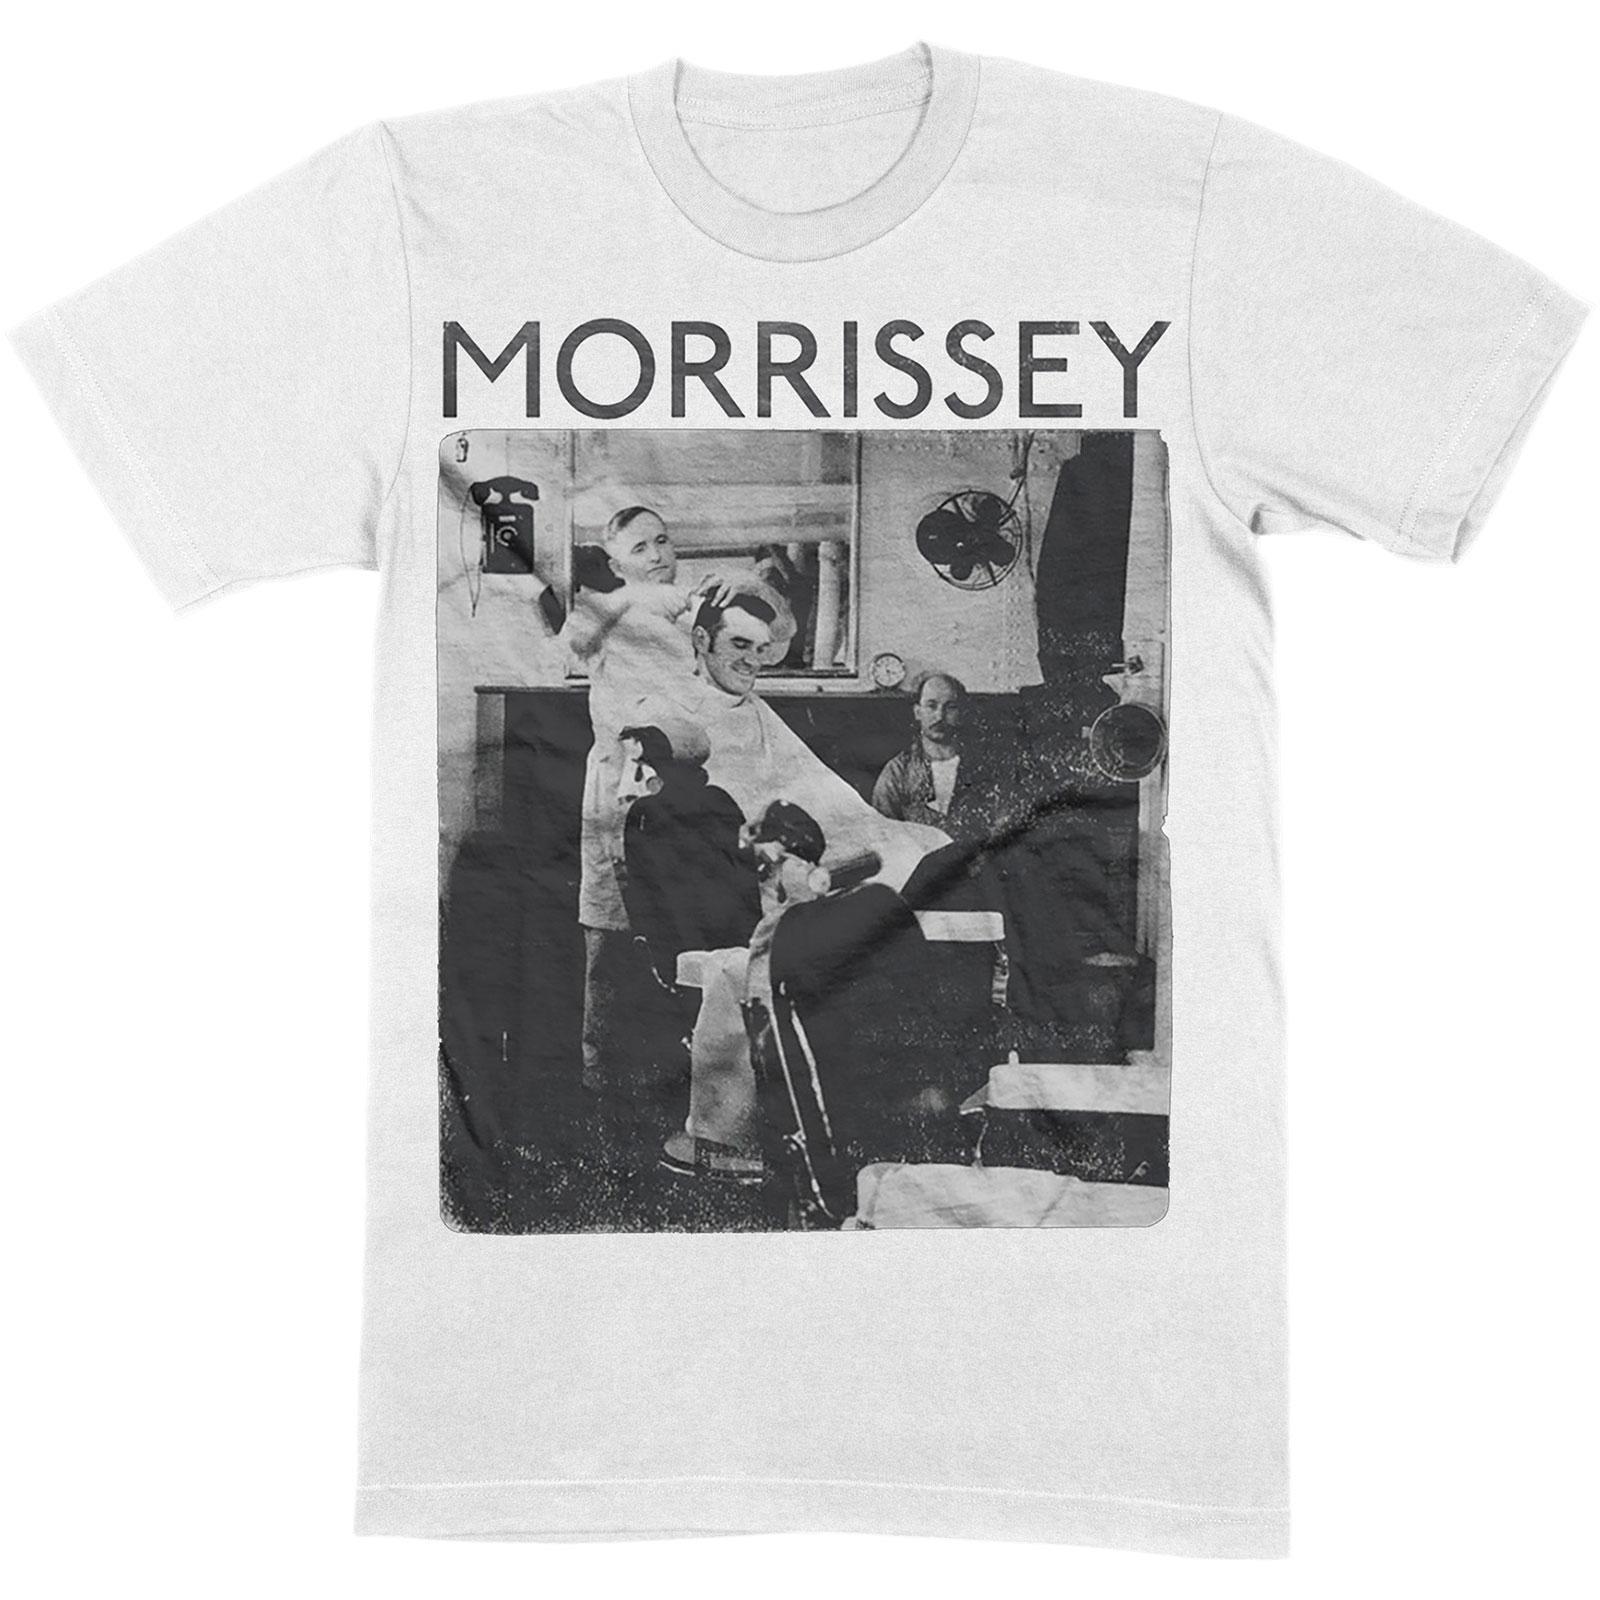 Morrissey Unisex Adult Barber Shop Cotton T-Shirt (White) (XL)